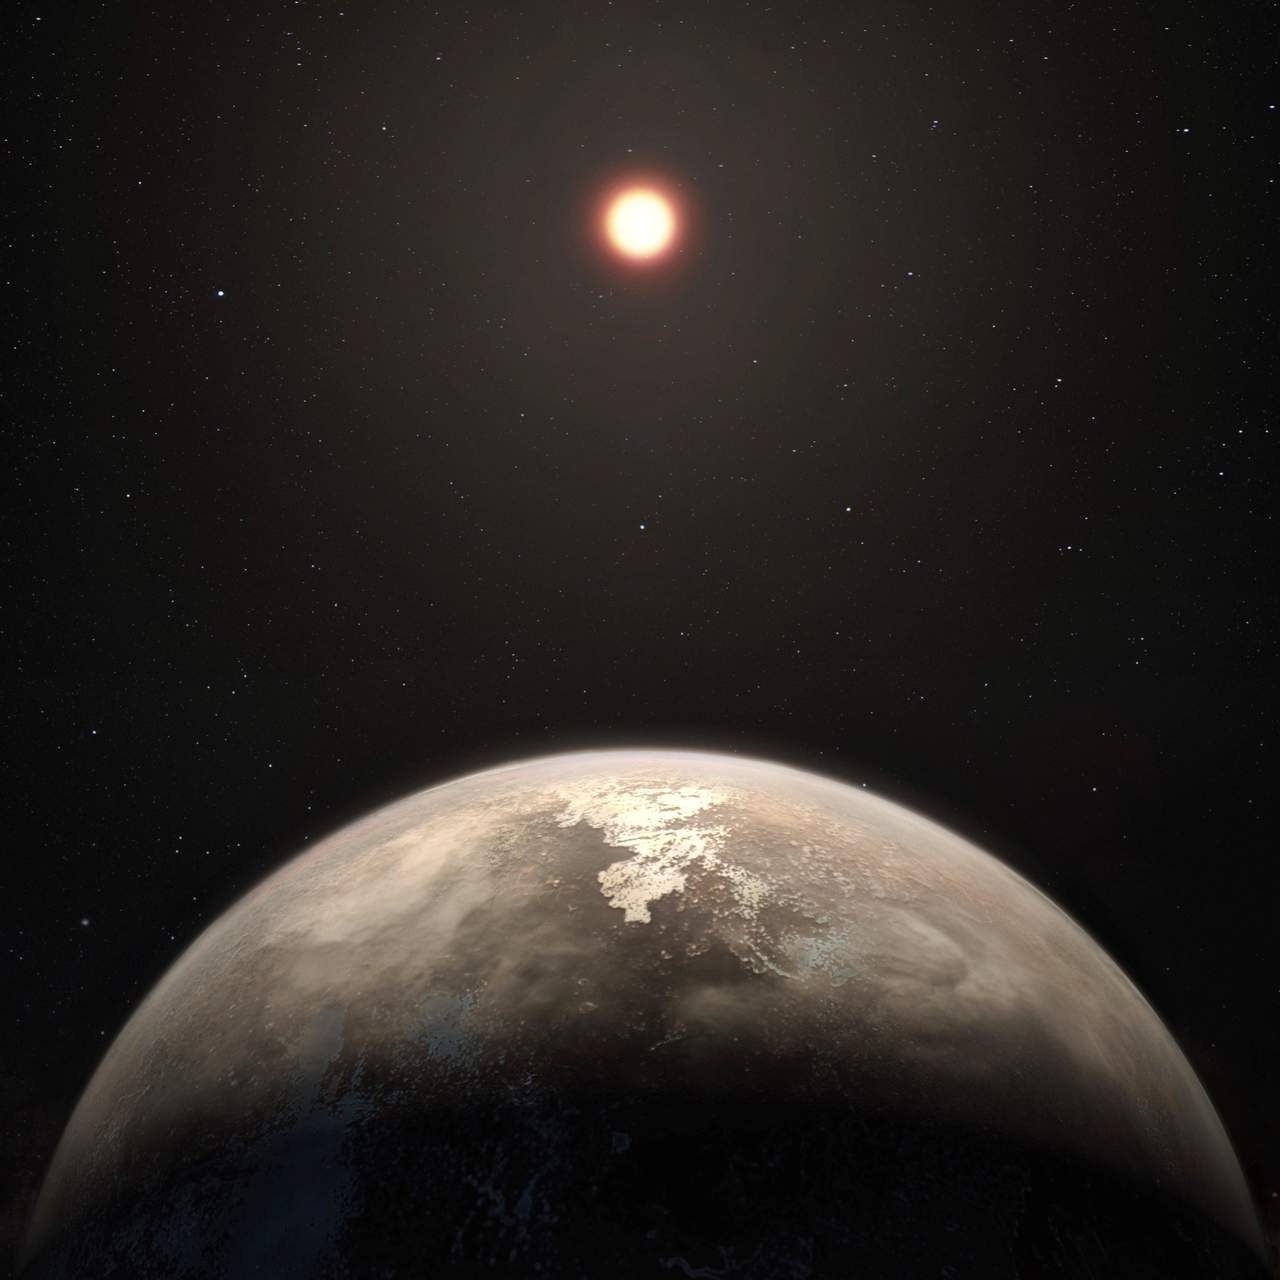 El planeta, que ha sido llamado Ross 128 b, es el más cercano descubierto que orbita en torno a una estrella enana roja inactiva, lo que puede aumentar las probabilidades de que reúna las condiciones para albergar vida. (EFE)